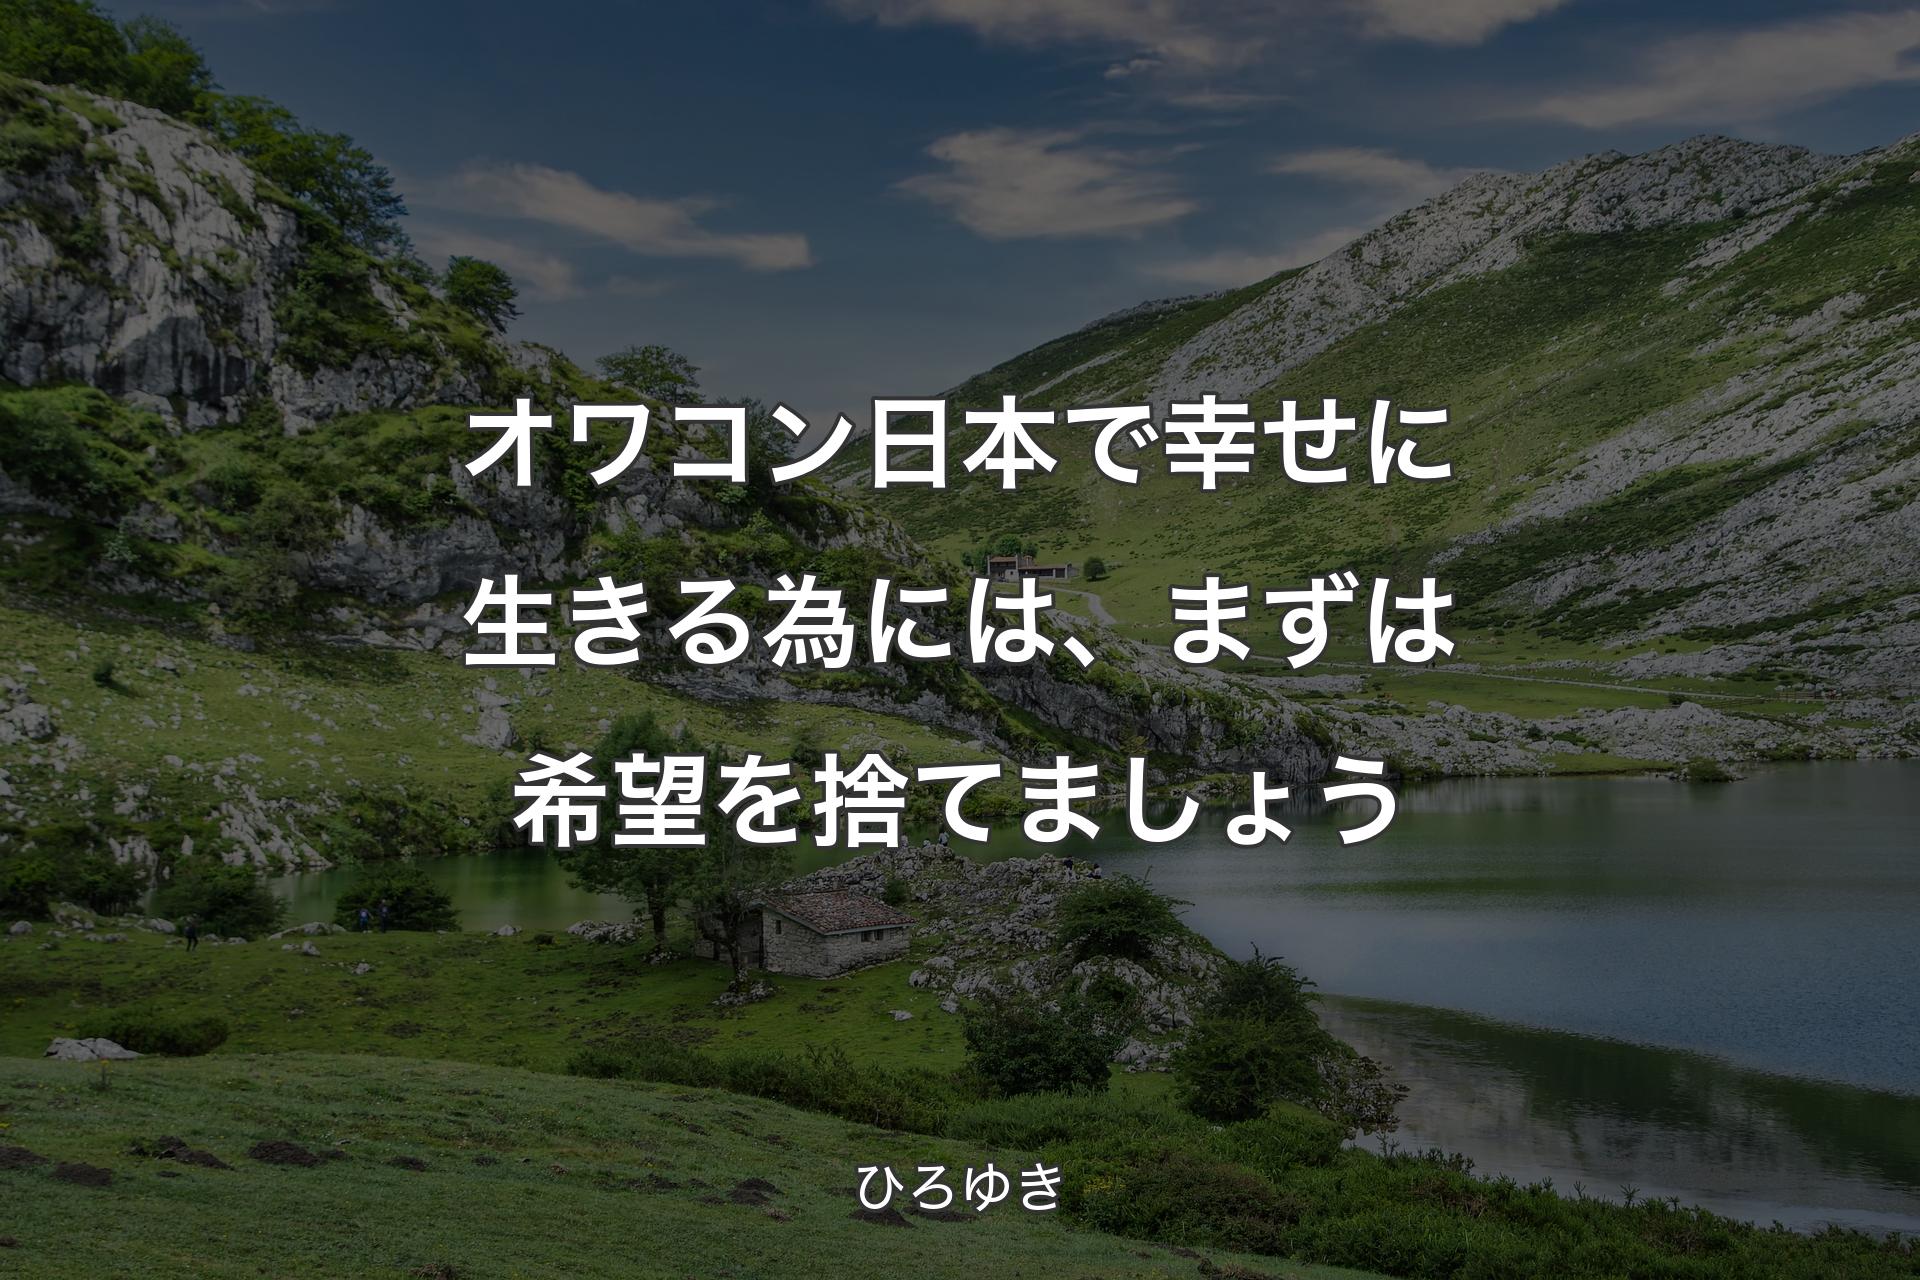 【背景1】オワコン日本で幸せに生きる為には、まずは希望を捨てましょう - ひろゆき